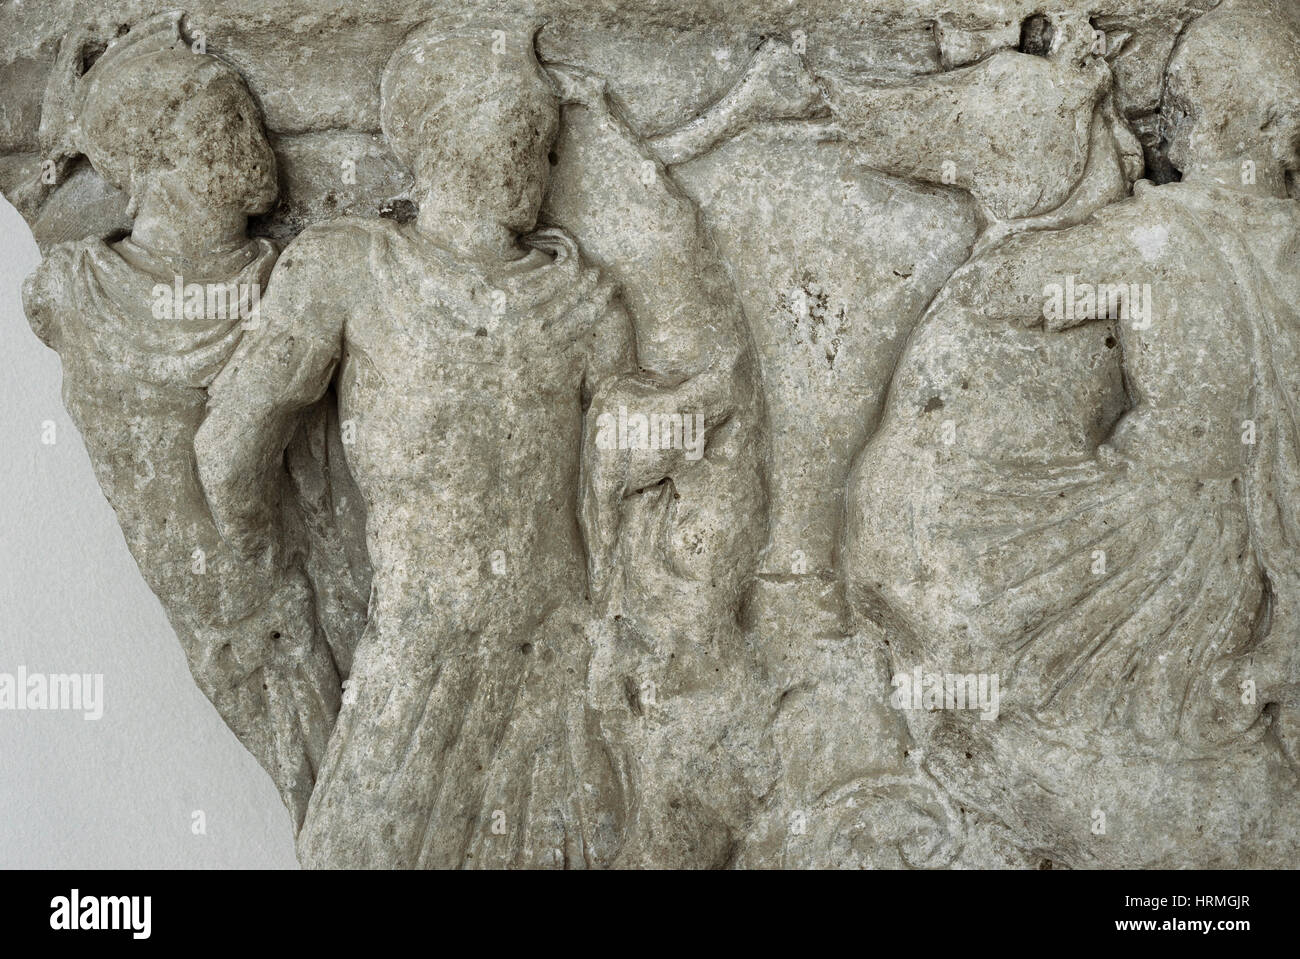 Fragmento del sarcófago con escenas de batalla. Museo Arqueológico Nacional. Tarragona. Cataluña, España. Foto de stock